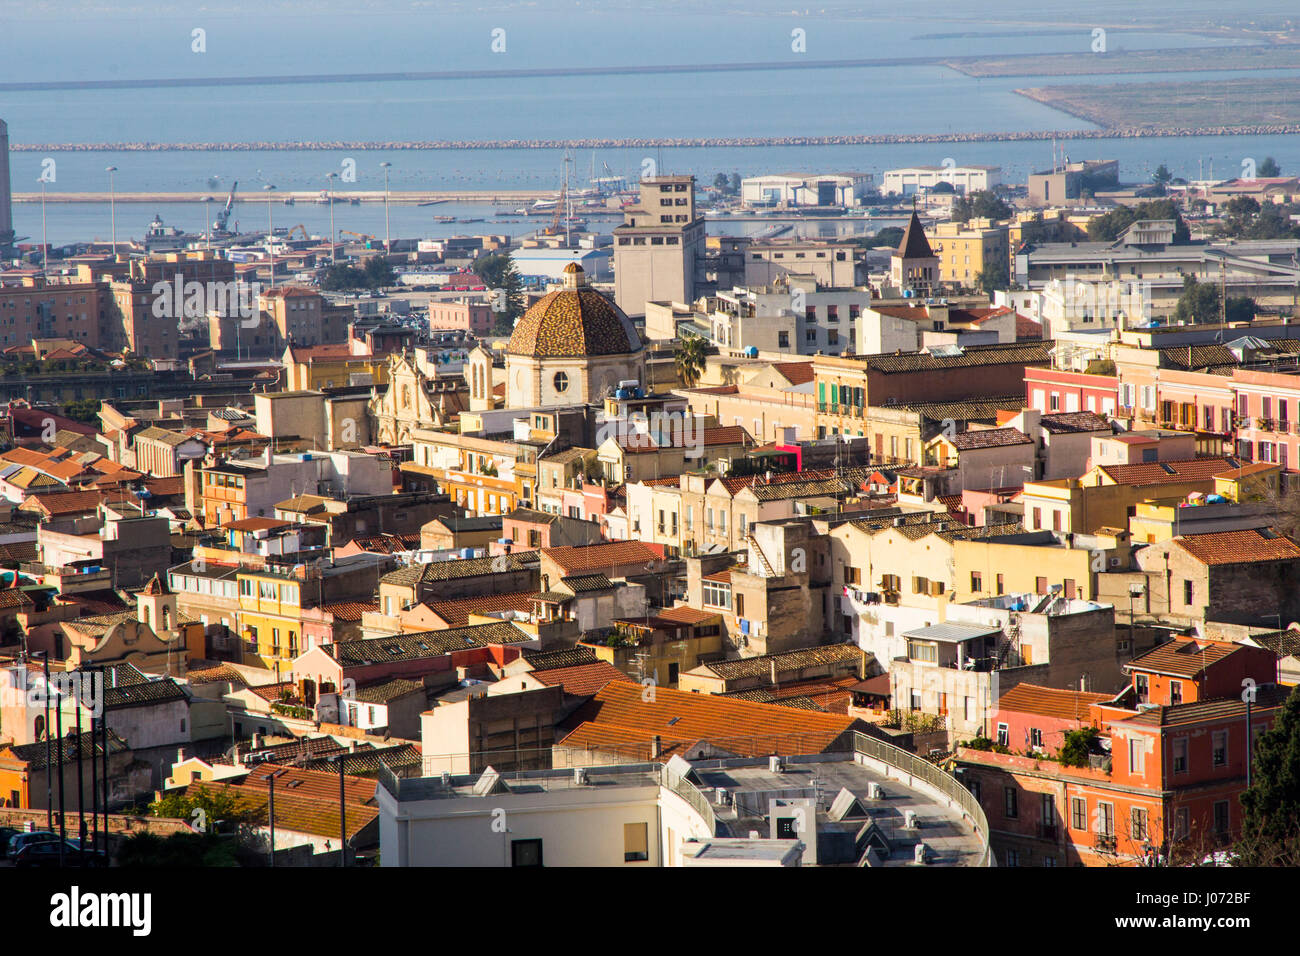 Die Hauptstadt Cagliari glänzt in der Sonne Sardiniens, einmal inspirierende d. h. Lawrence, nennen es die "weißen Jerusalem." Stockfoto